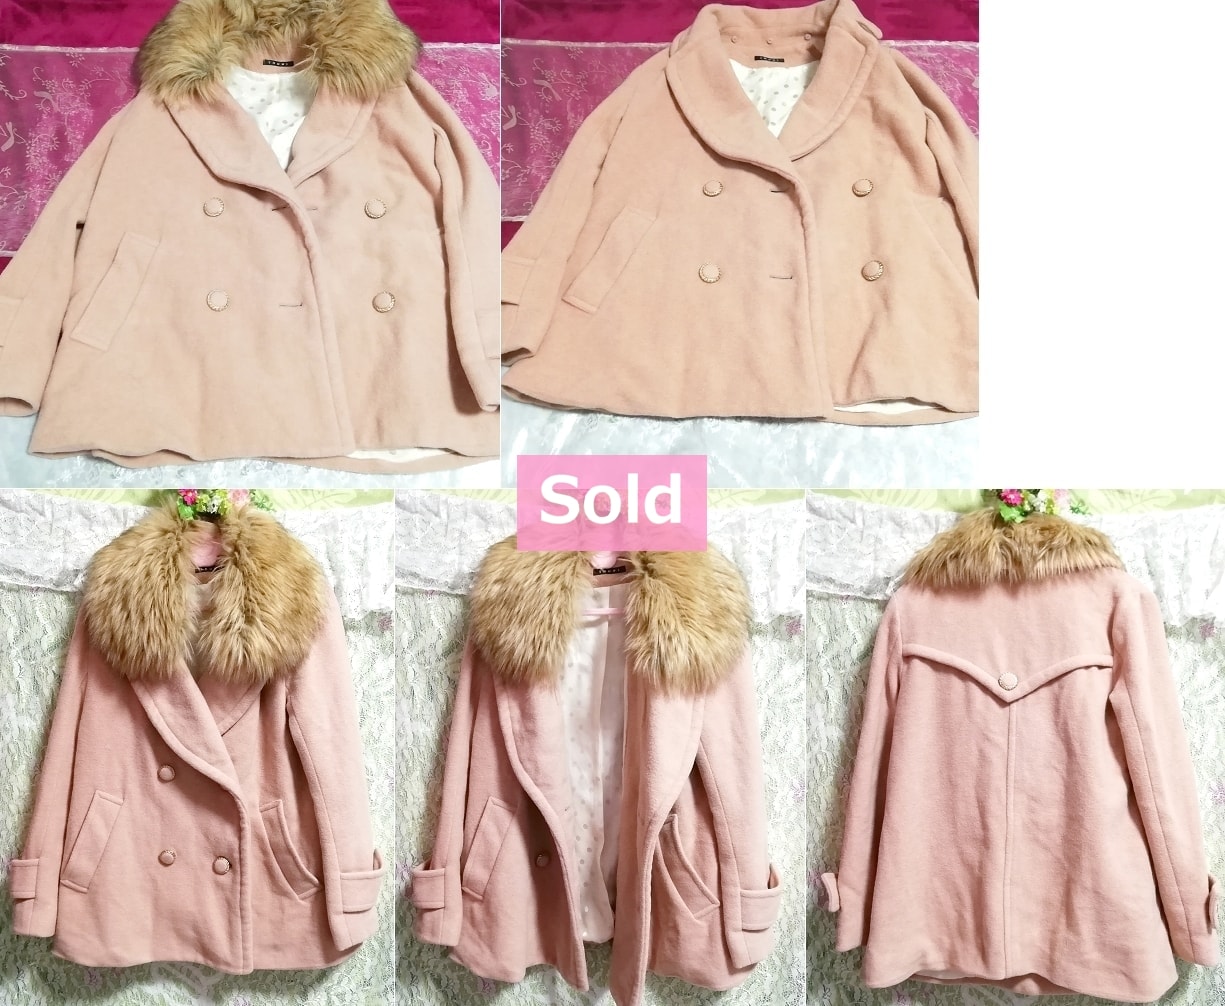 Розово-бежевый меховой палантин цвета льна накидка, пальто и пальто в целом и размер M